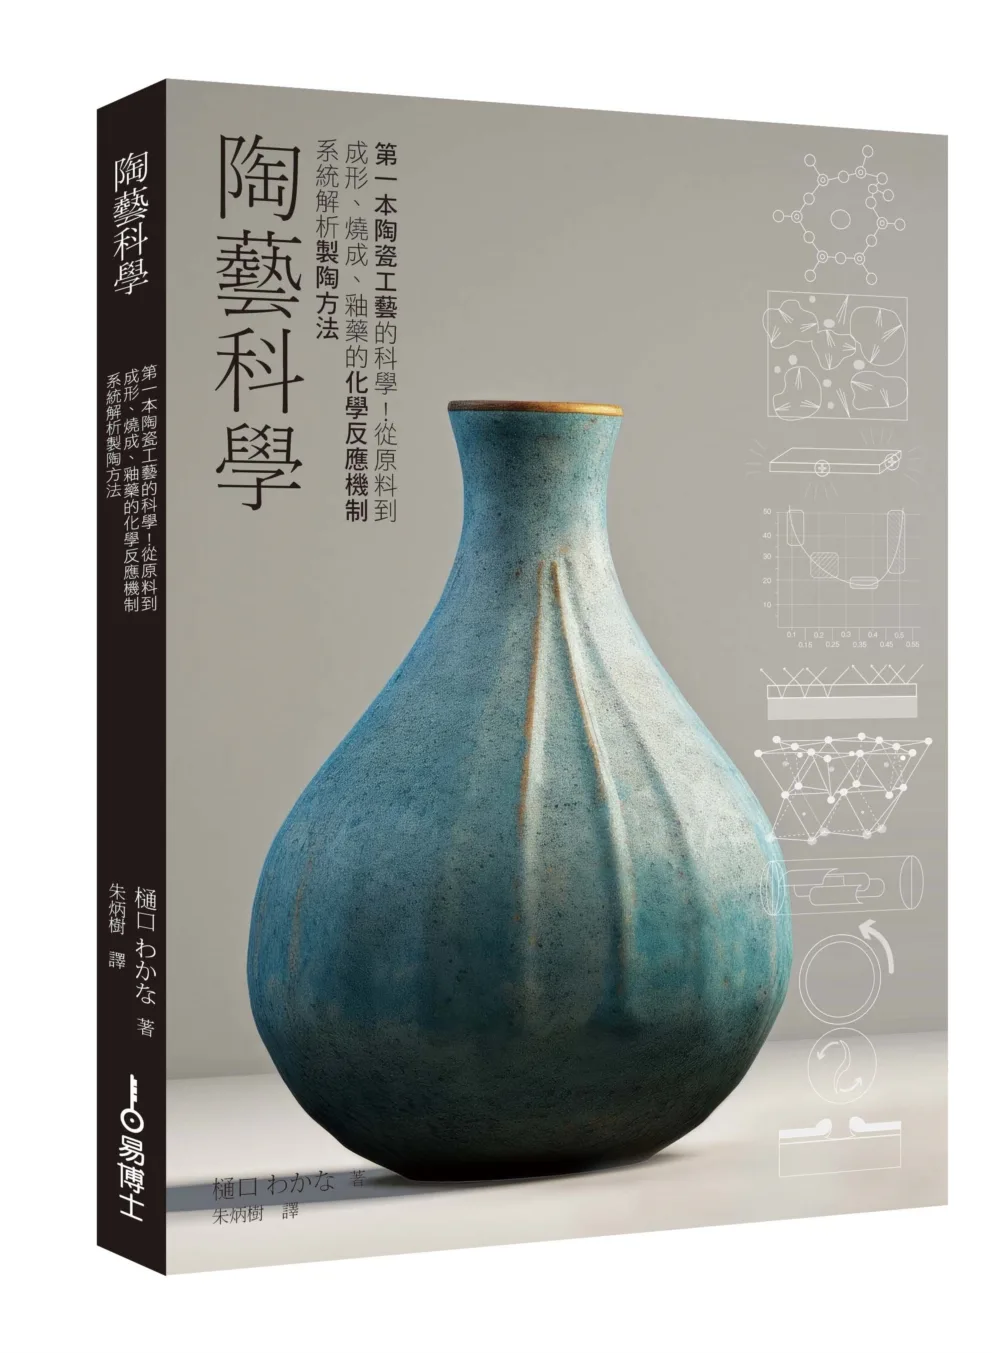 陶藝科學：第一本製陶工藝的科學！從原料到成形、燒成、釉藥的化學反應機制系統解析陶藝方法